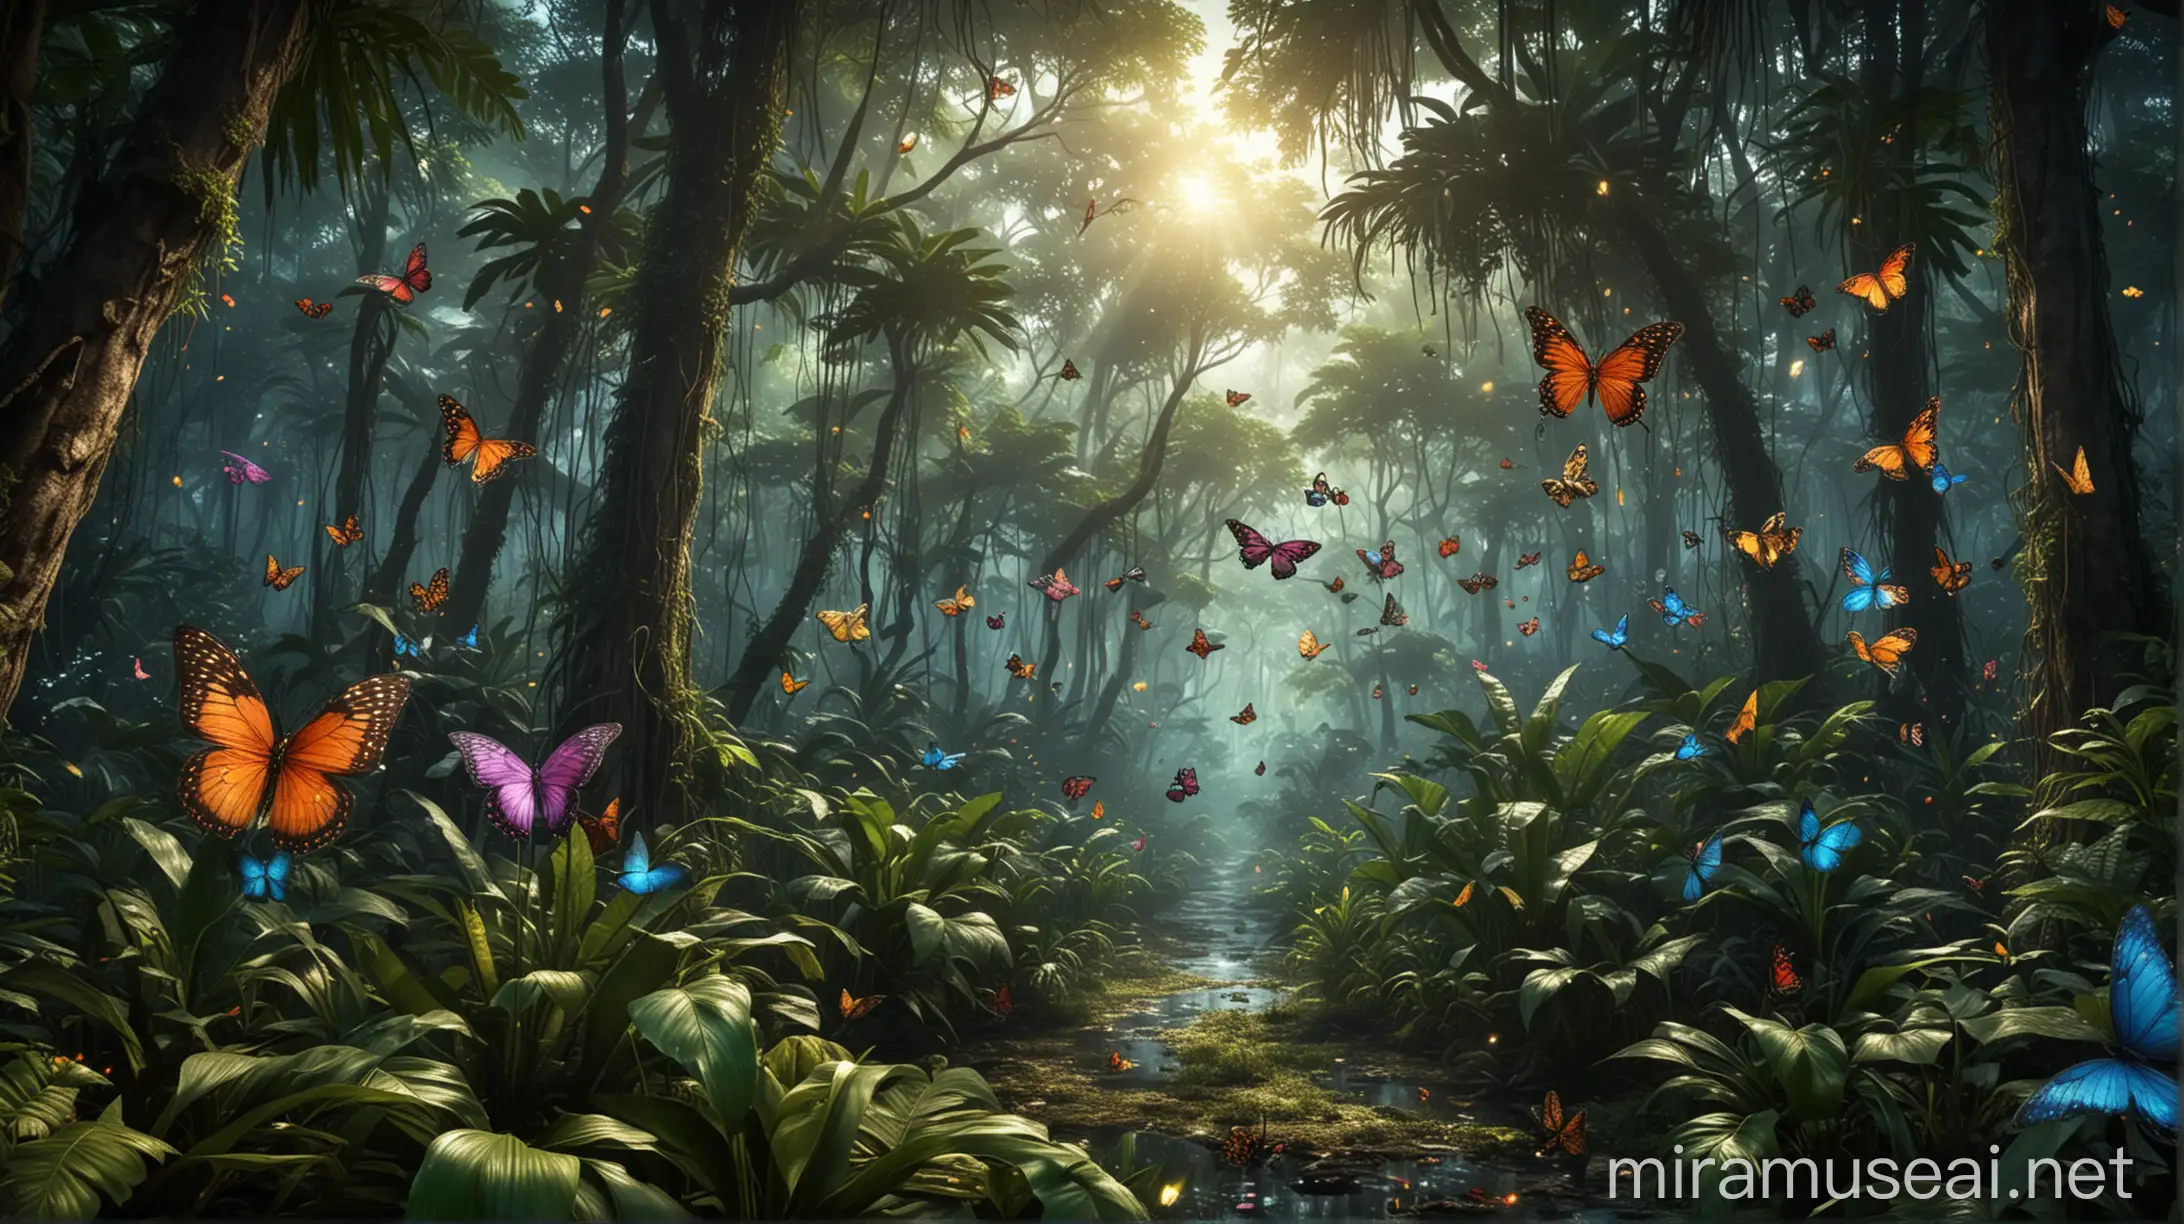 Dunia fantasi Penuh dengan kupu kupu dan kunang kunang berterbangan background hutan tropis yang sejuk, realistis ultra HDR extreme 